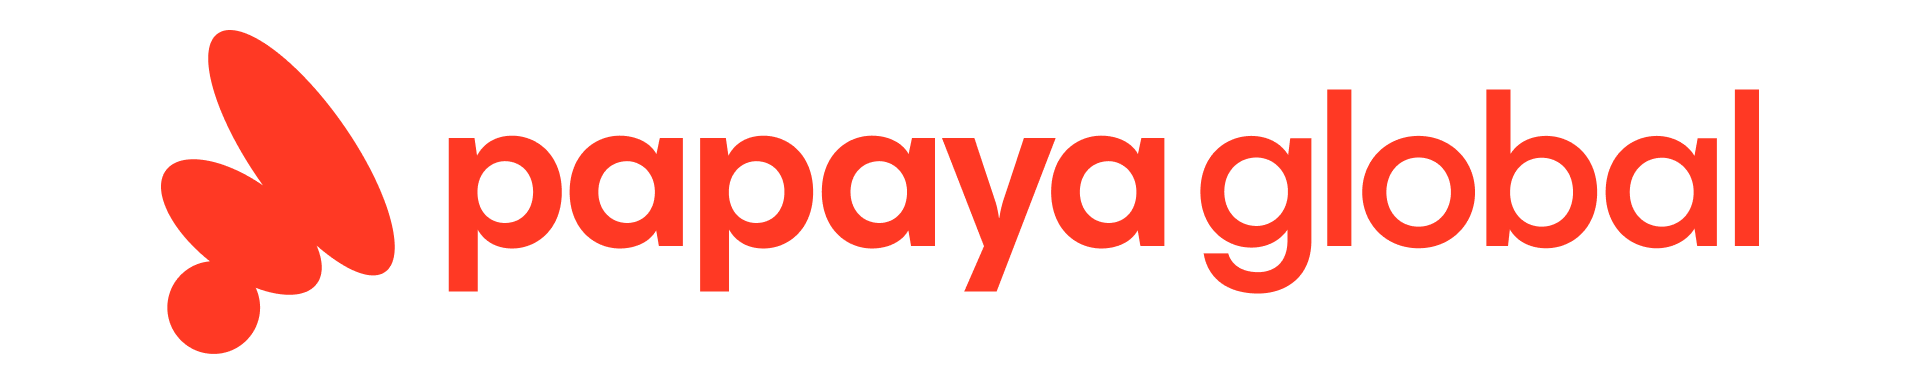 Papaya_Global_logo